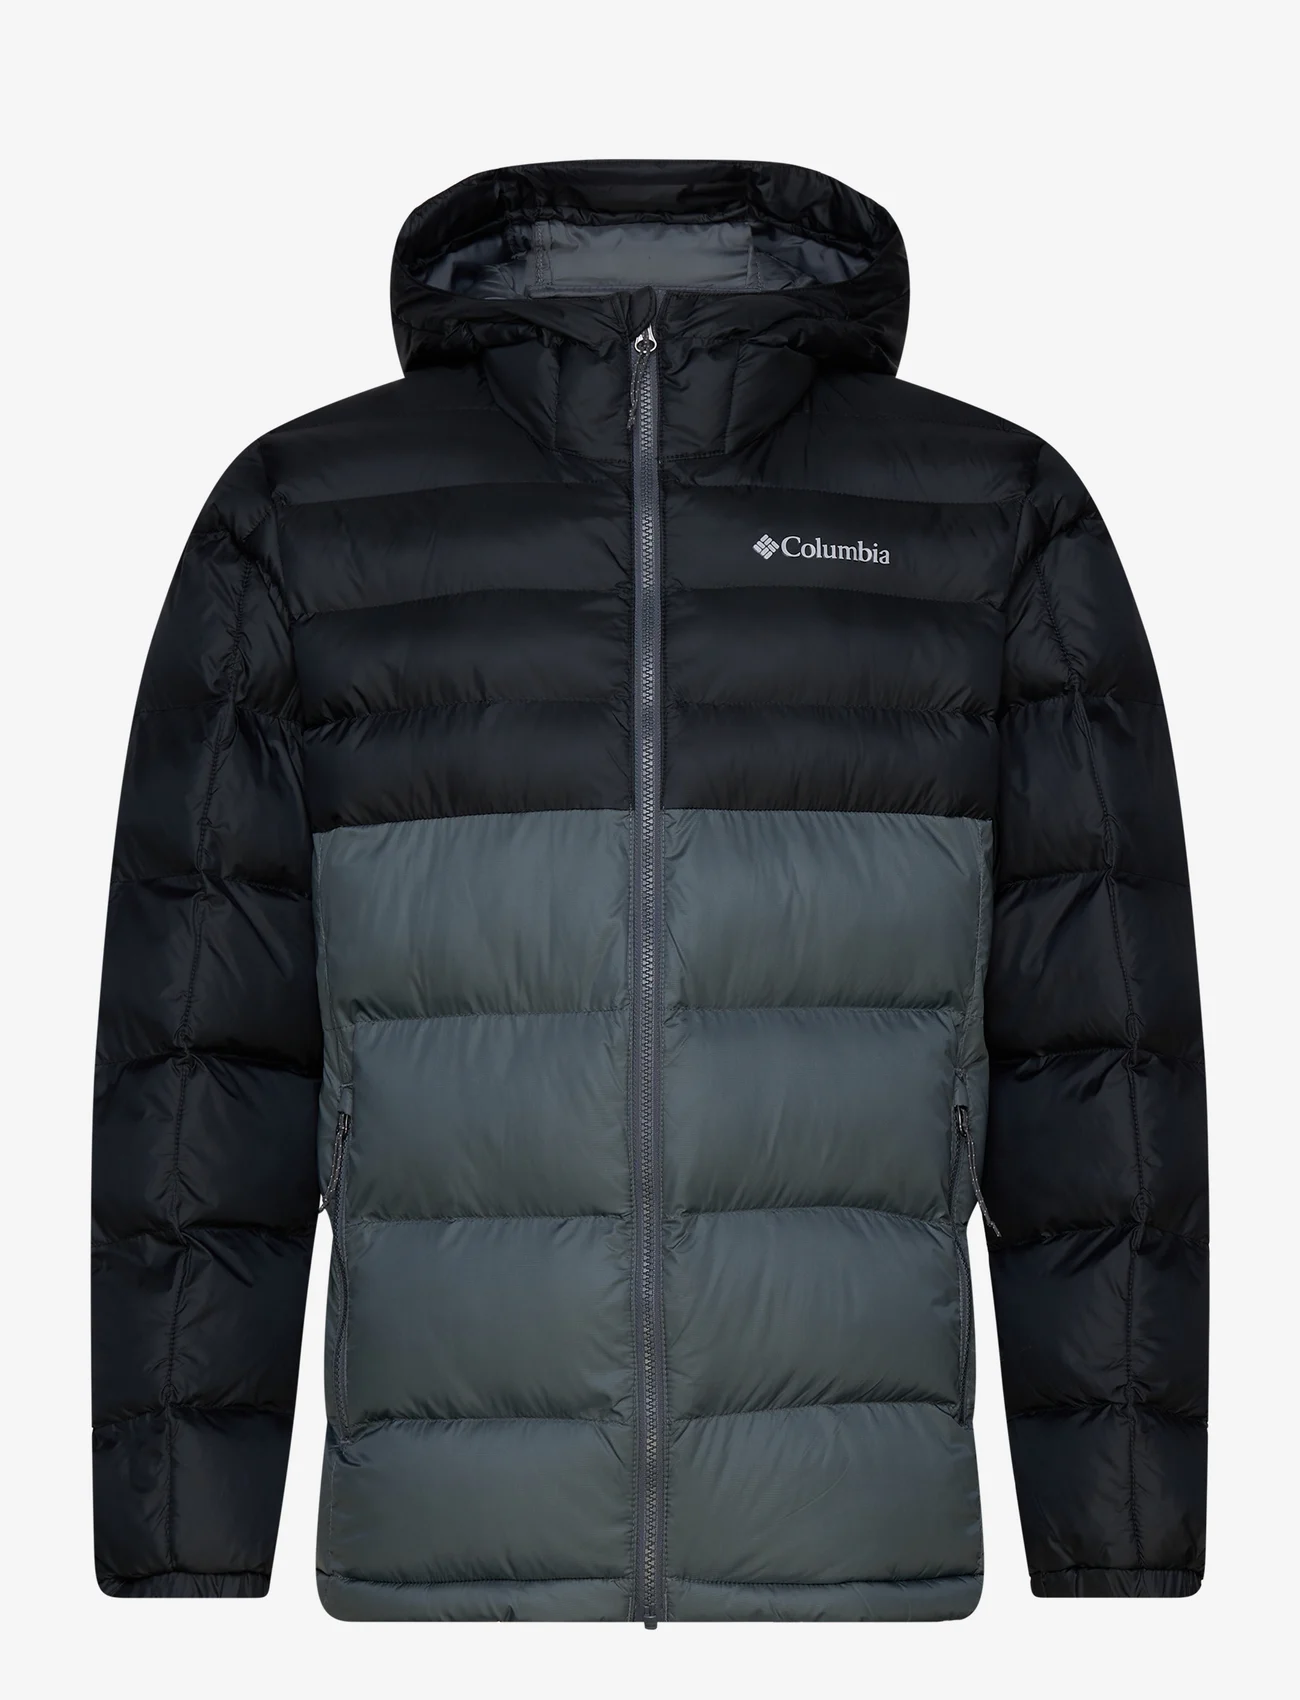 Columbia Sportswear - Buck Butte Insulated Hooded Jacket - vinterjakker - graphite, black - 0